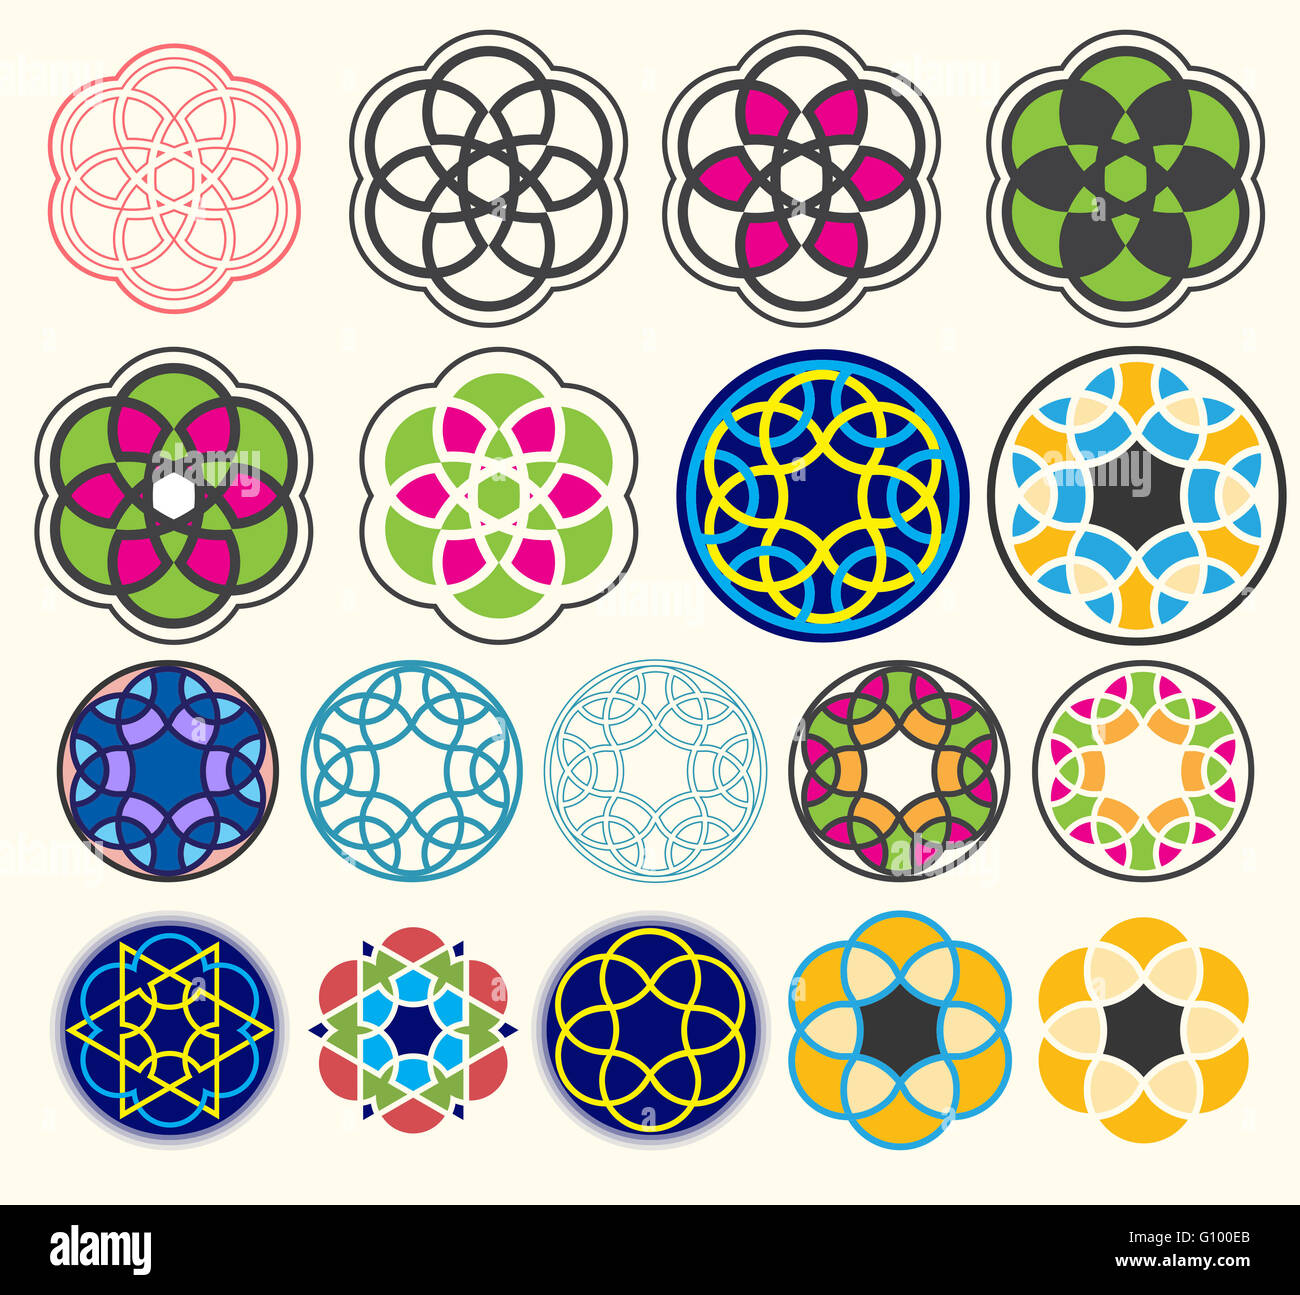 Un dessin de formes géométriques. Ensemble parfait de carte, couverture de livre, islamique, métalliques, logo. icône, la texture. Banque D'Images